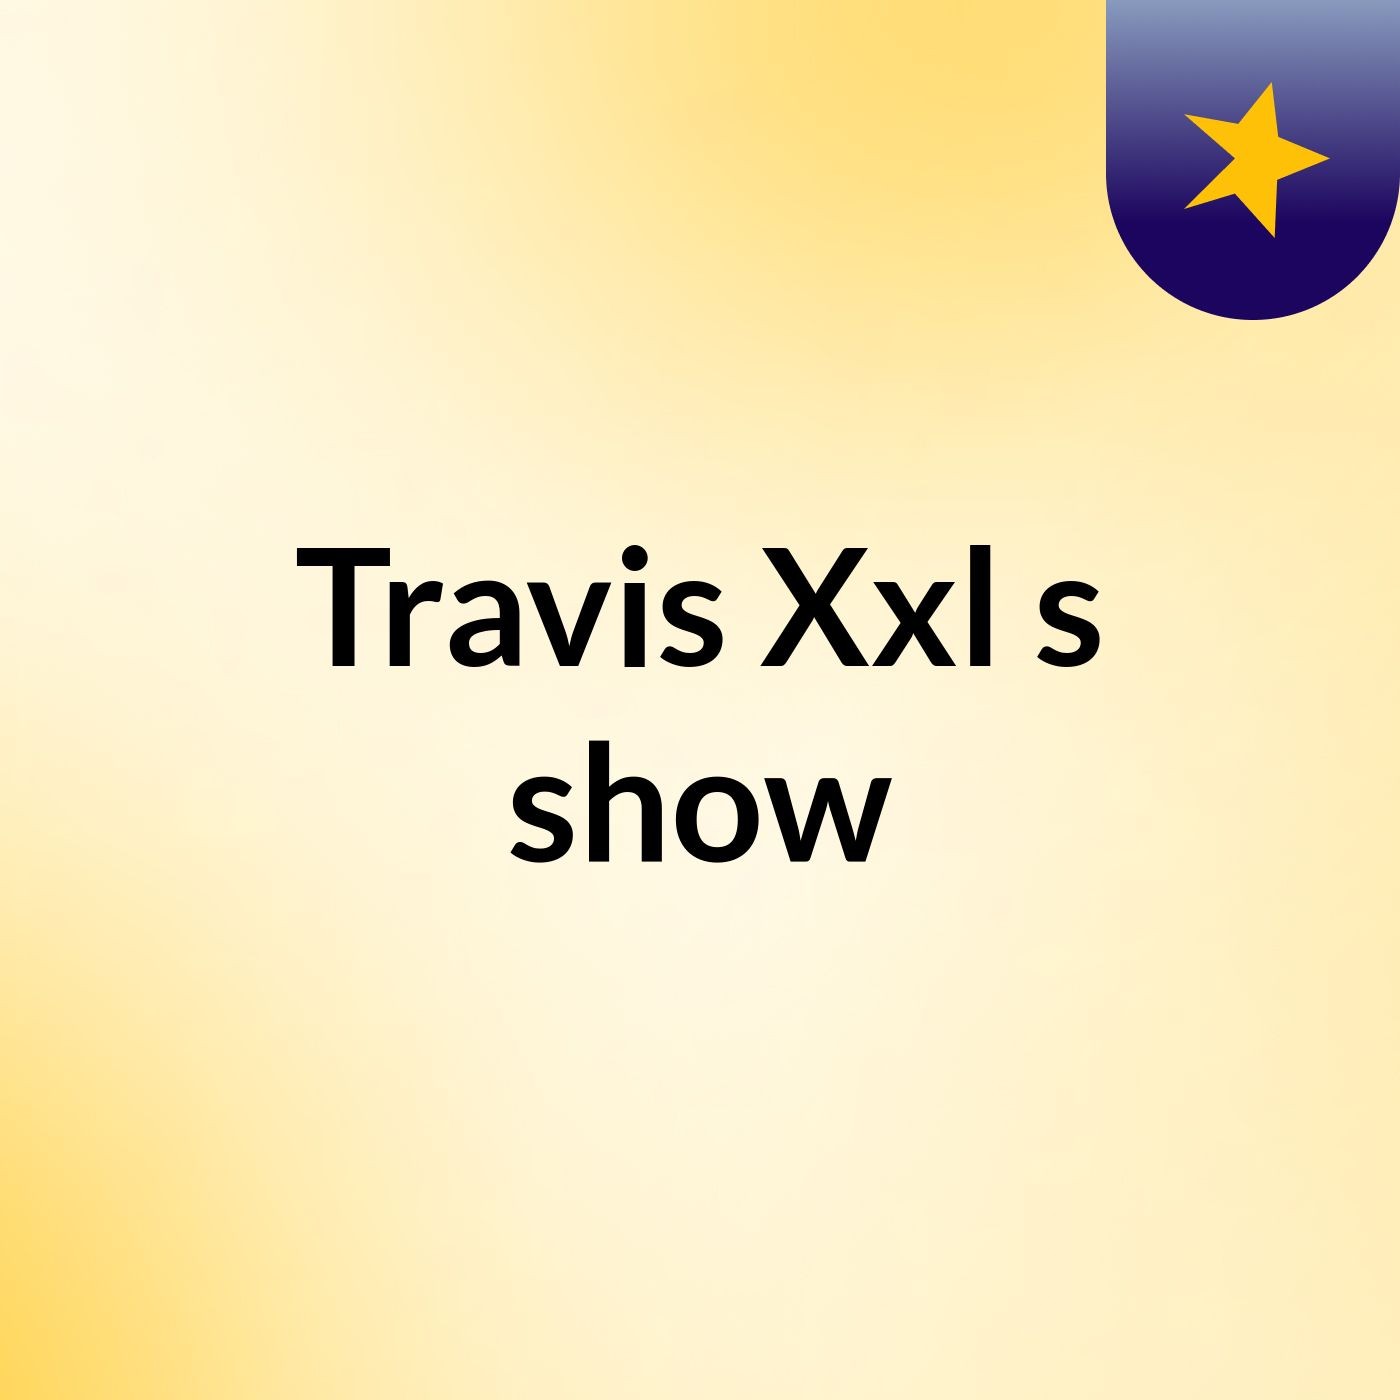 Travis Xxl's show